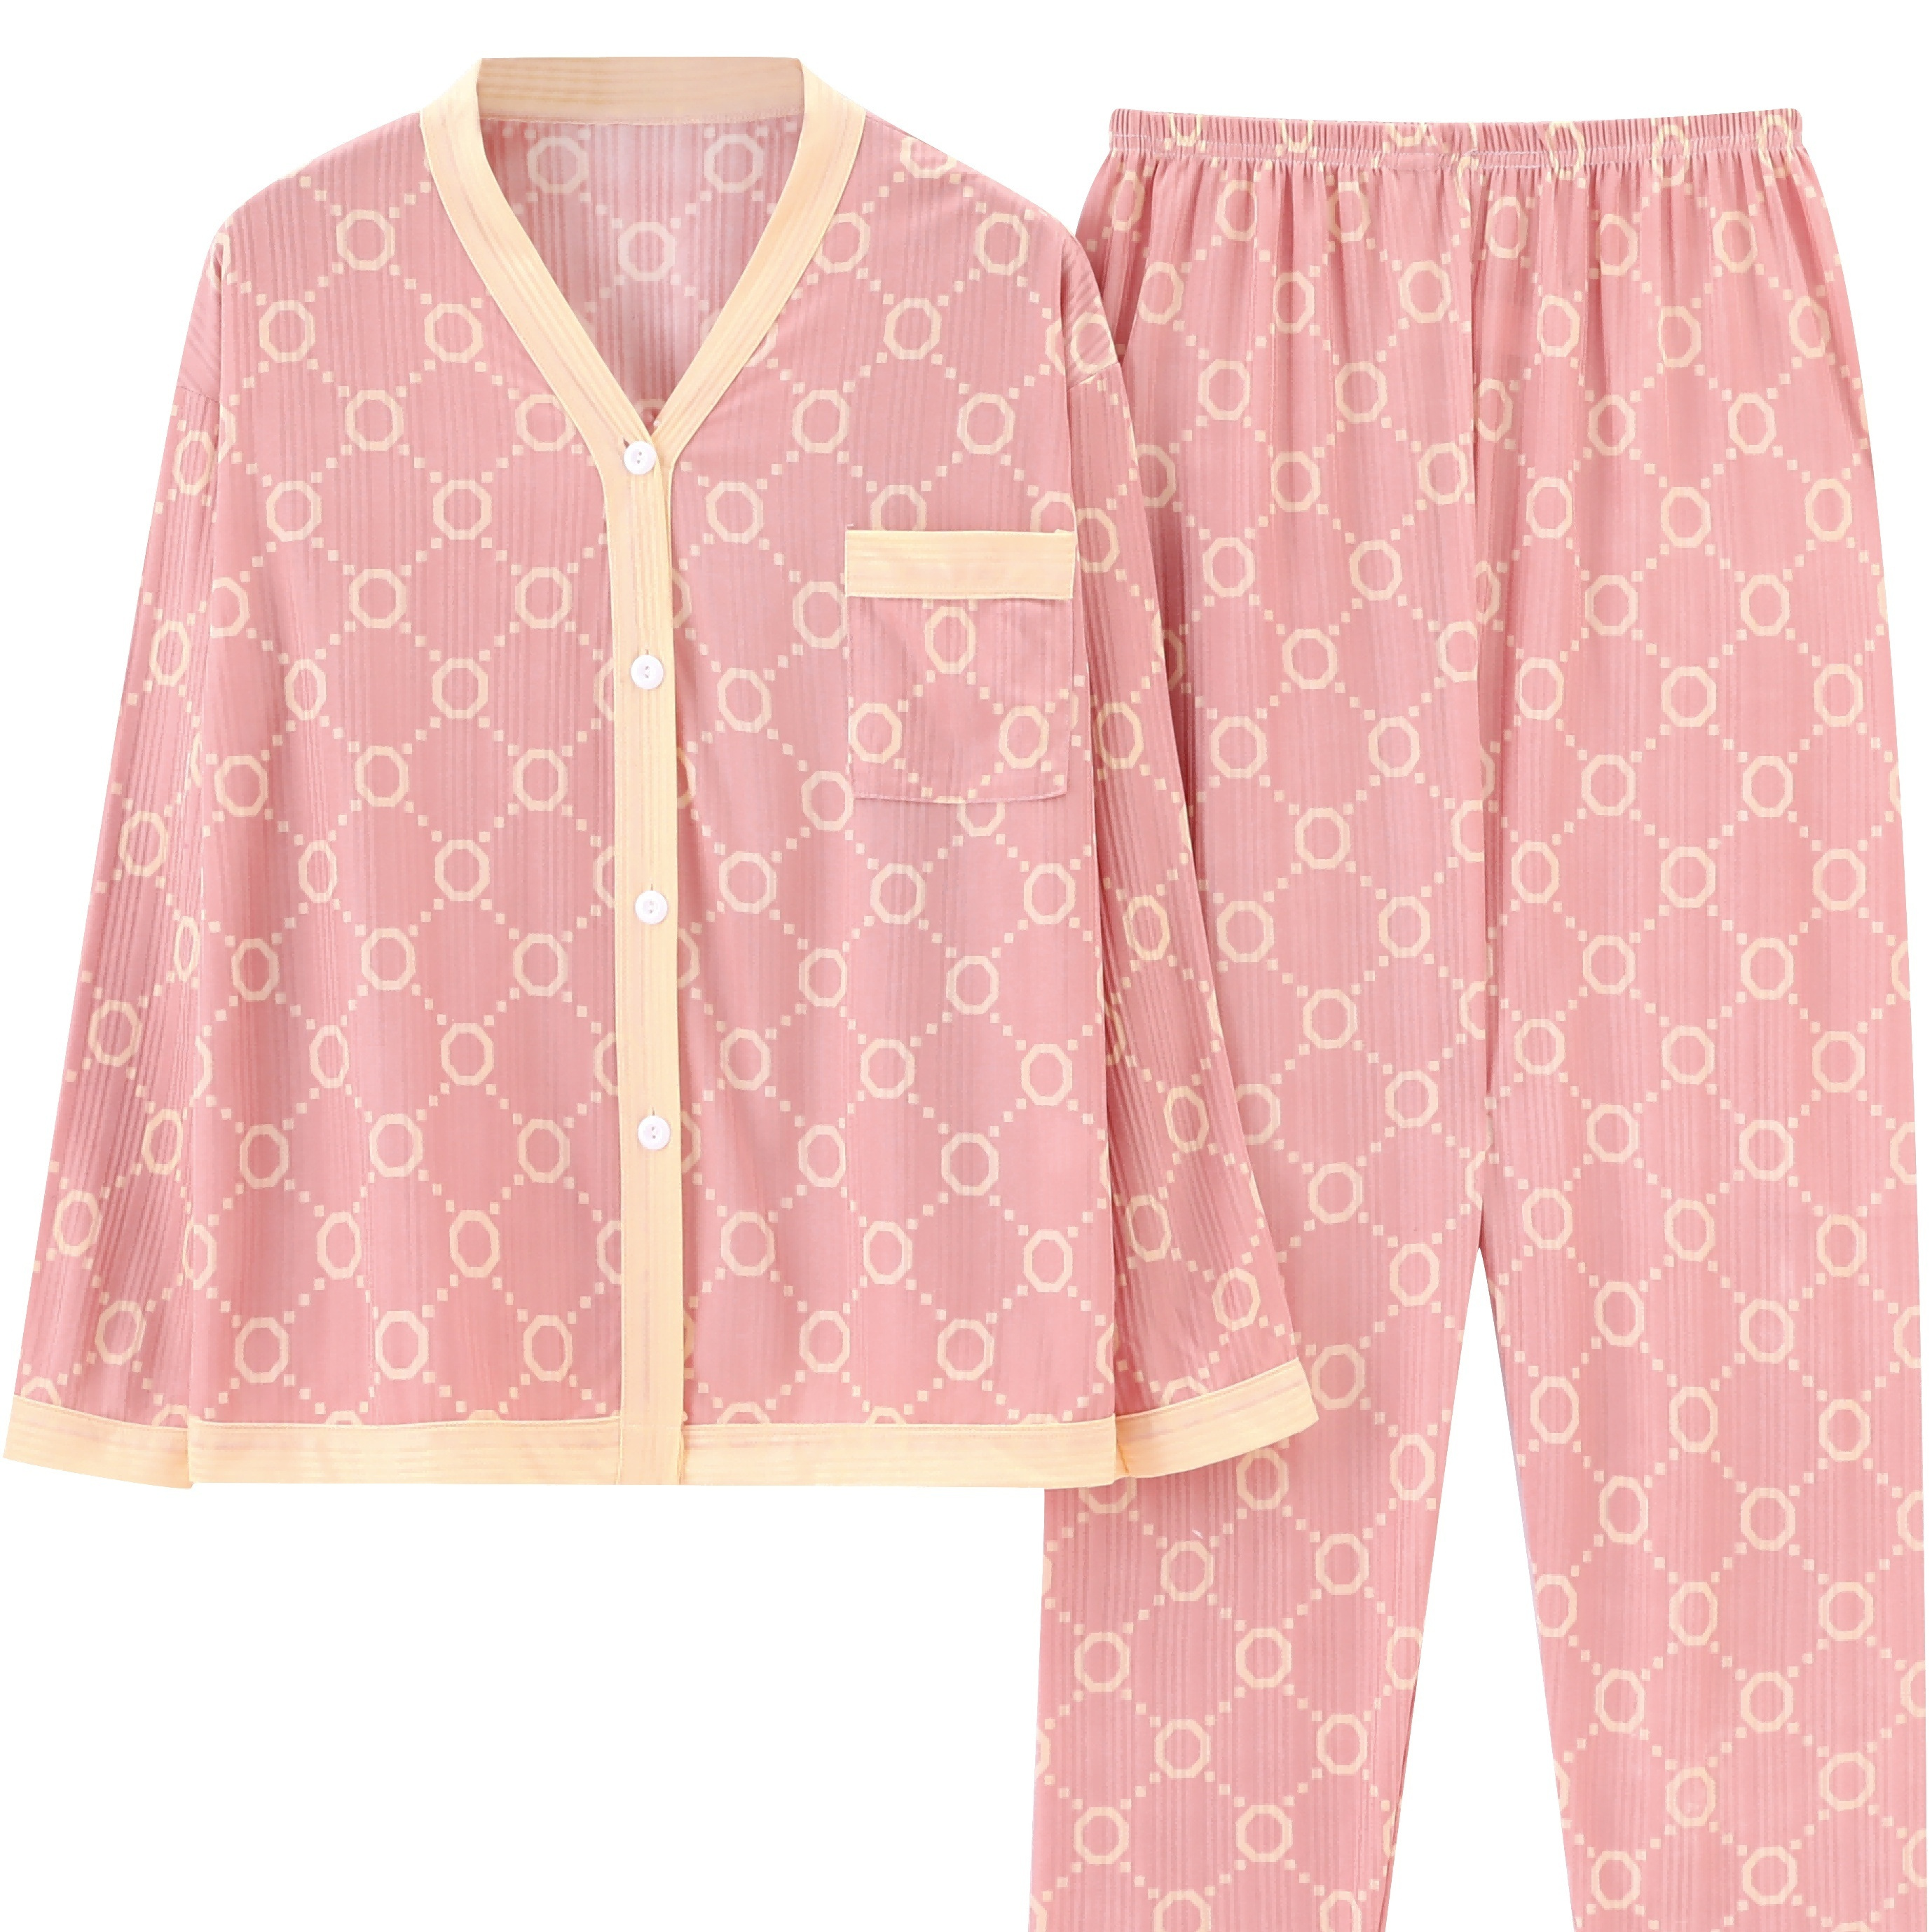 Gucci Nightwear & Pyjamas for Women